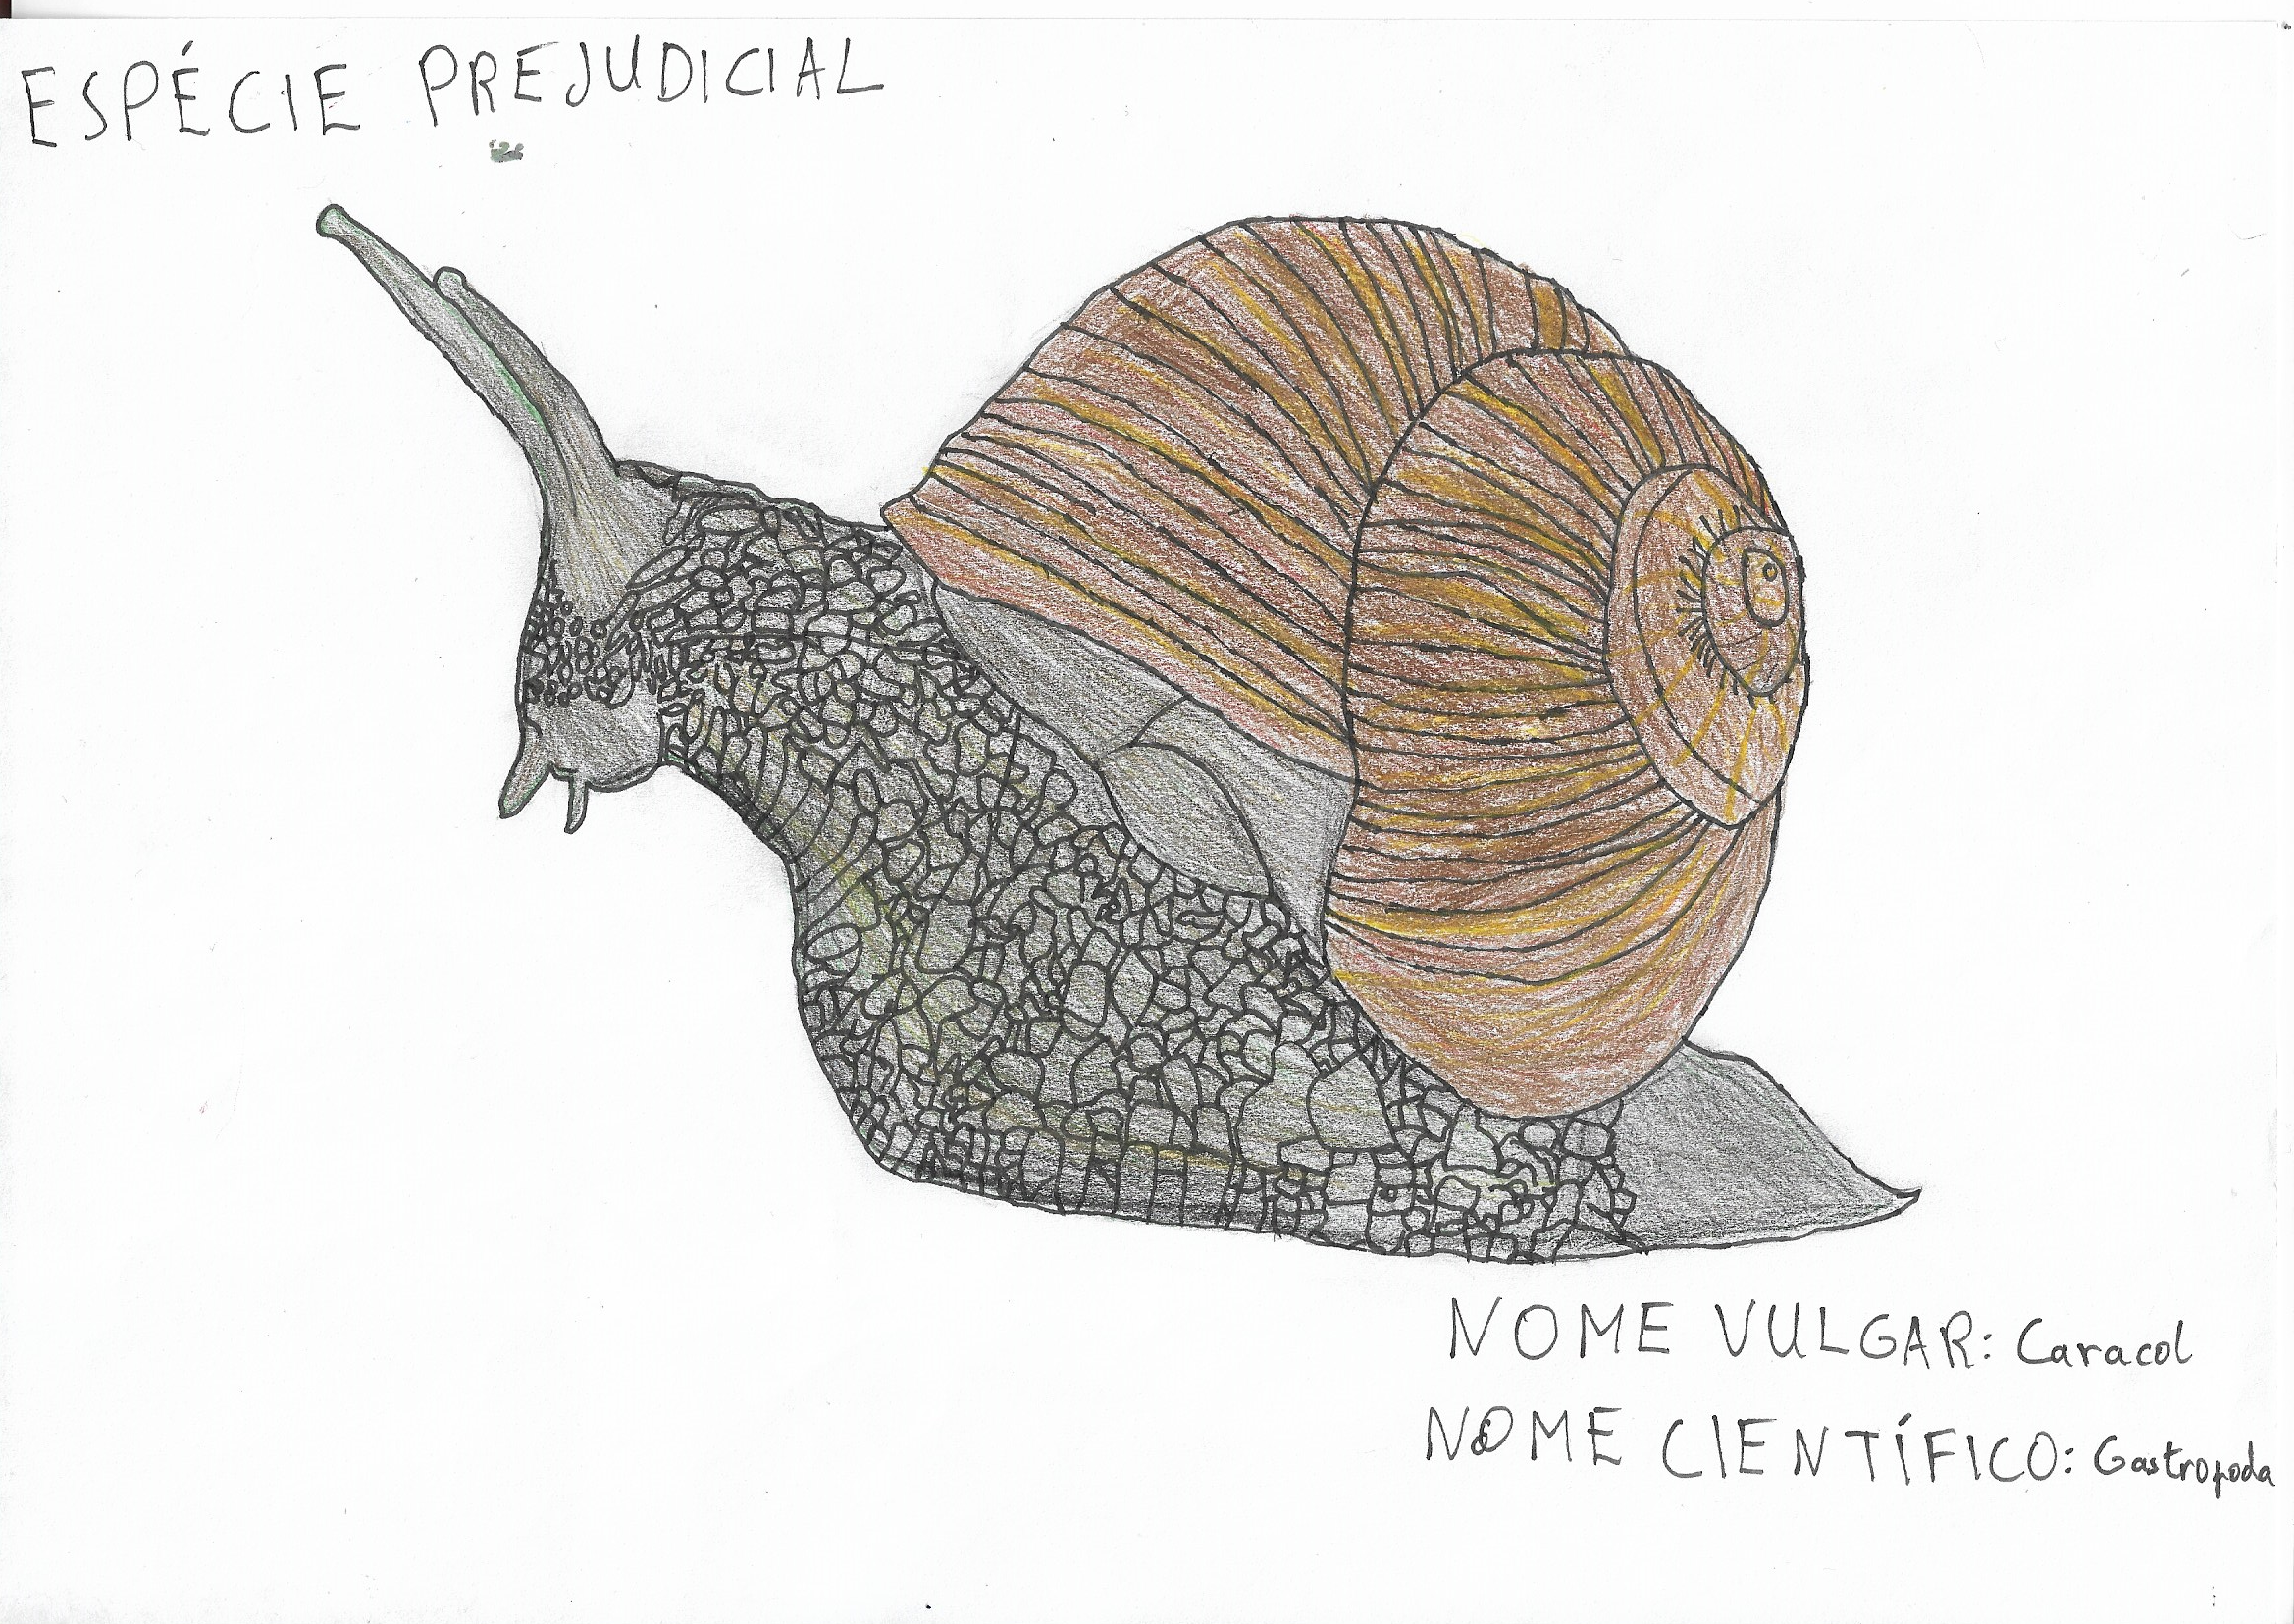 Nome vulgar: Caracol
Nome científico: Gastropoda